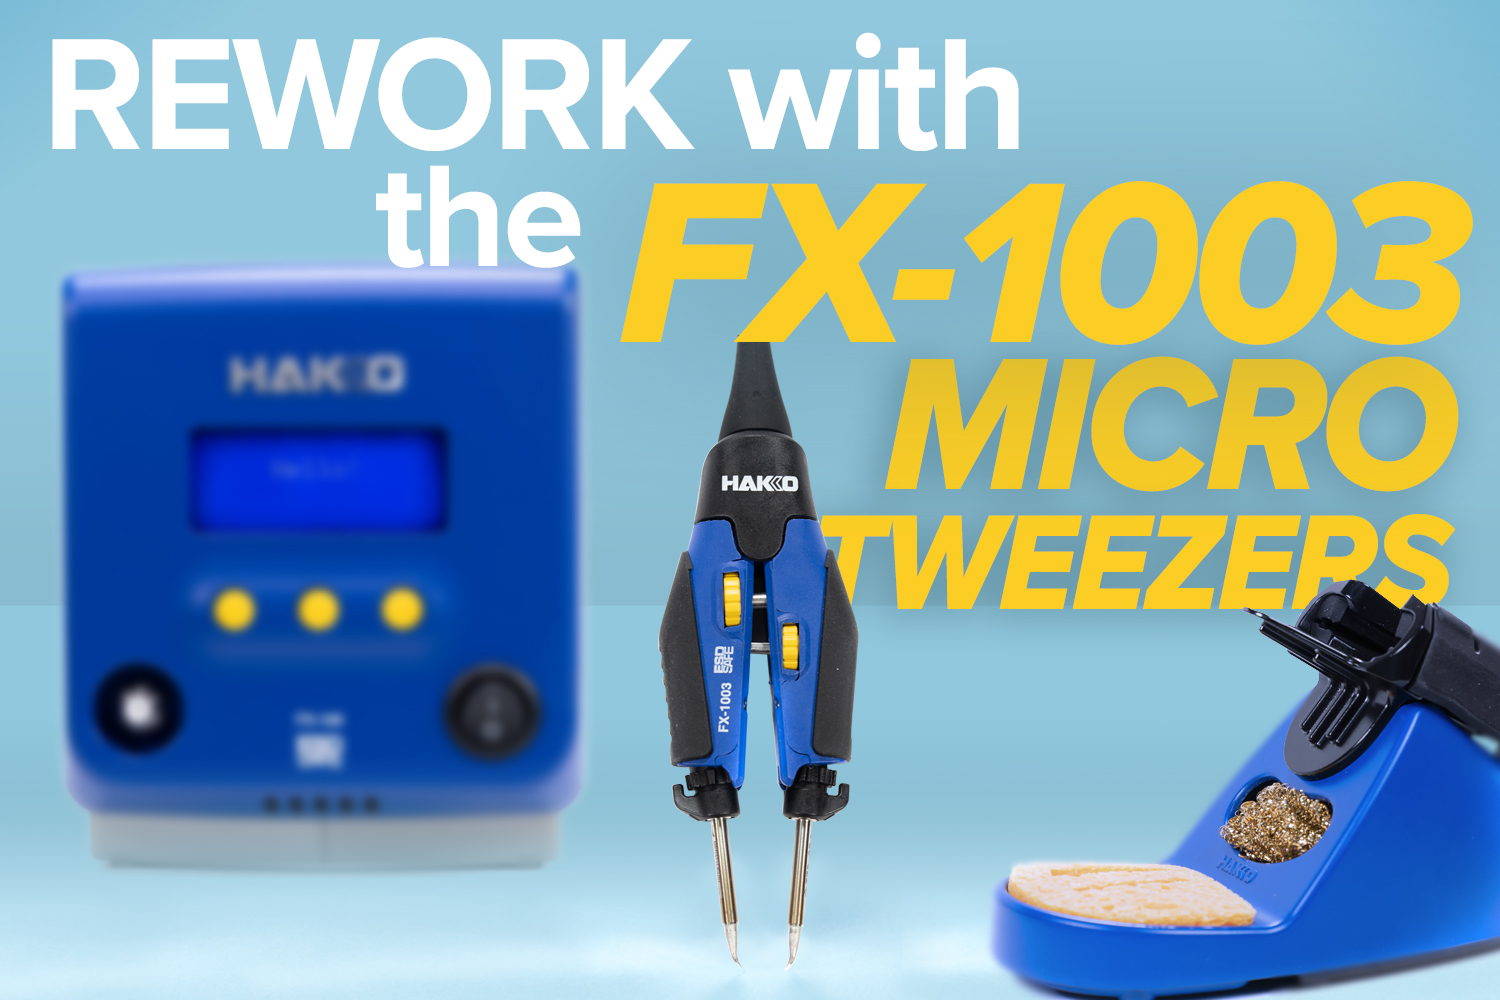 Rework with the FX-1003 Micro Tweezers